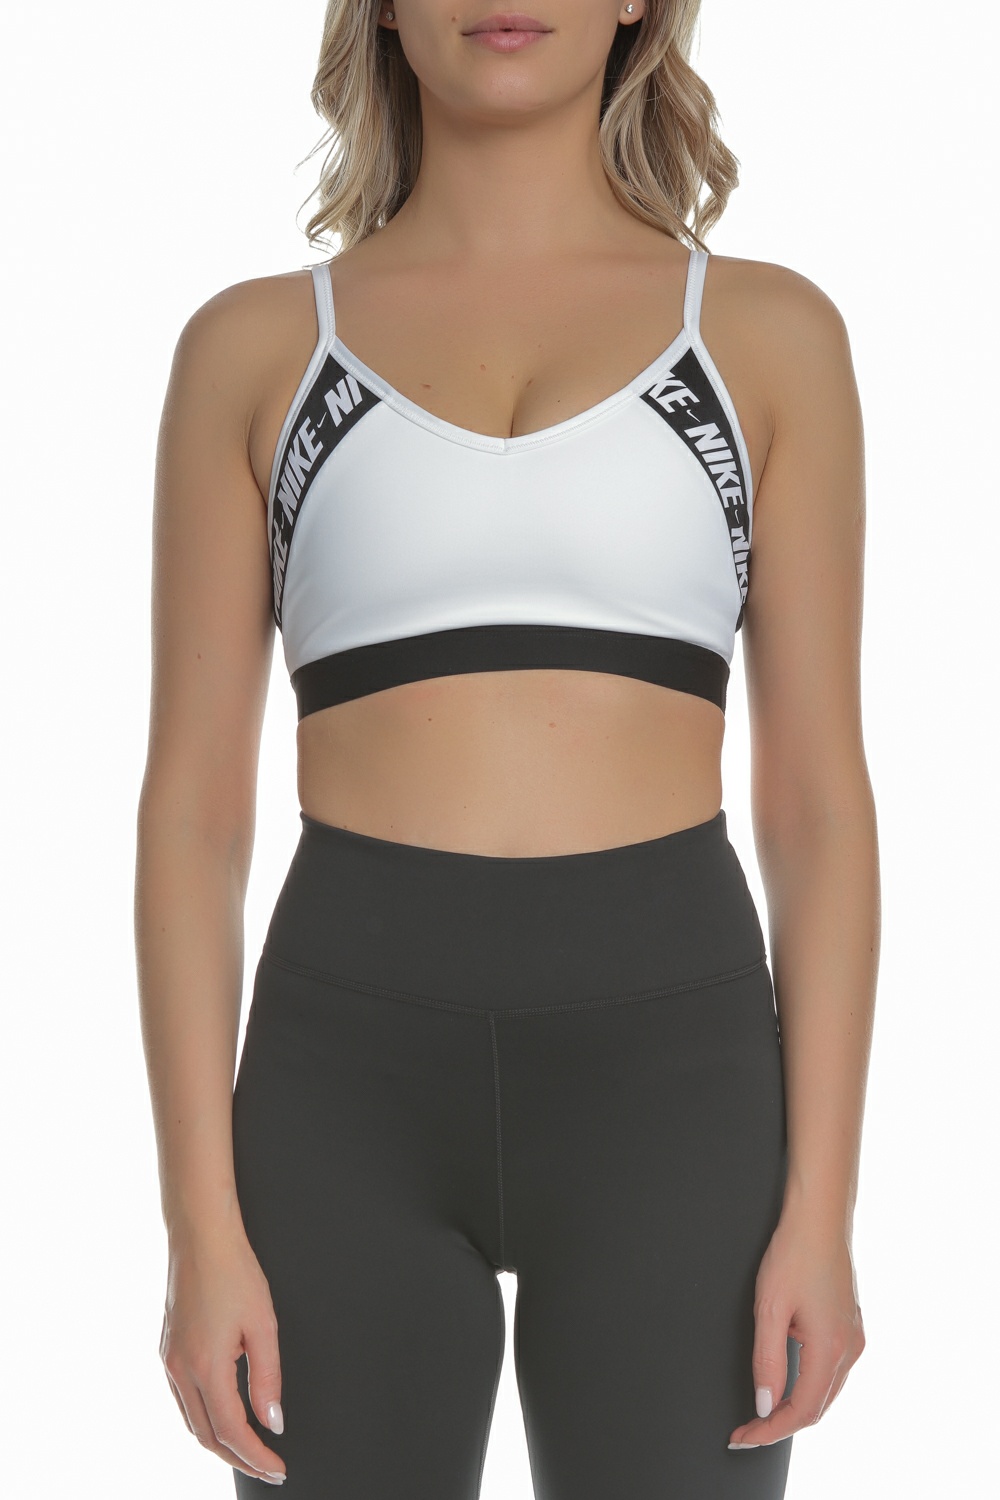 NIKE – Γυναικείο αθλητικό μπουστάκι NIKE INDY LOGO BRA λευκό-μαύρο